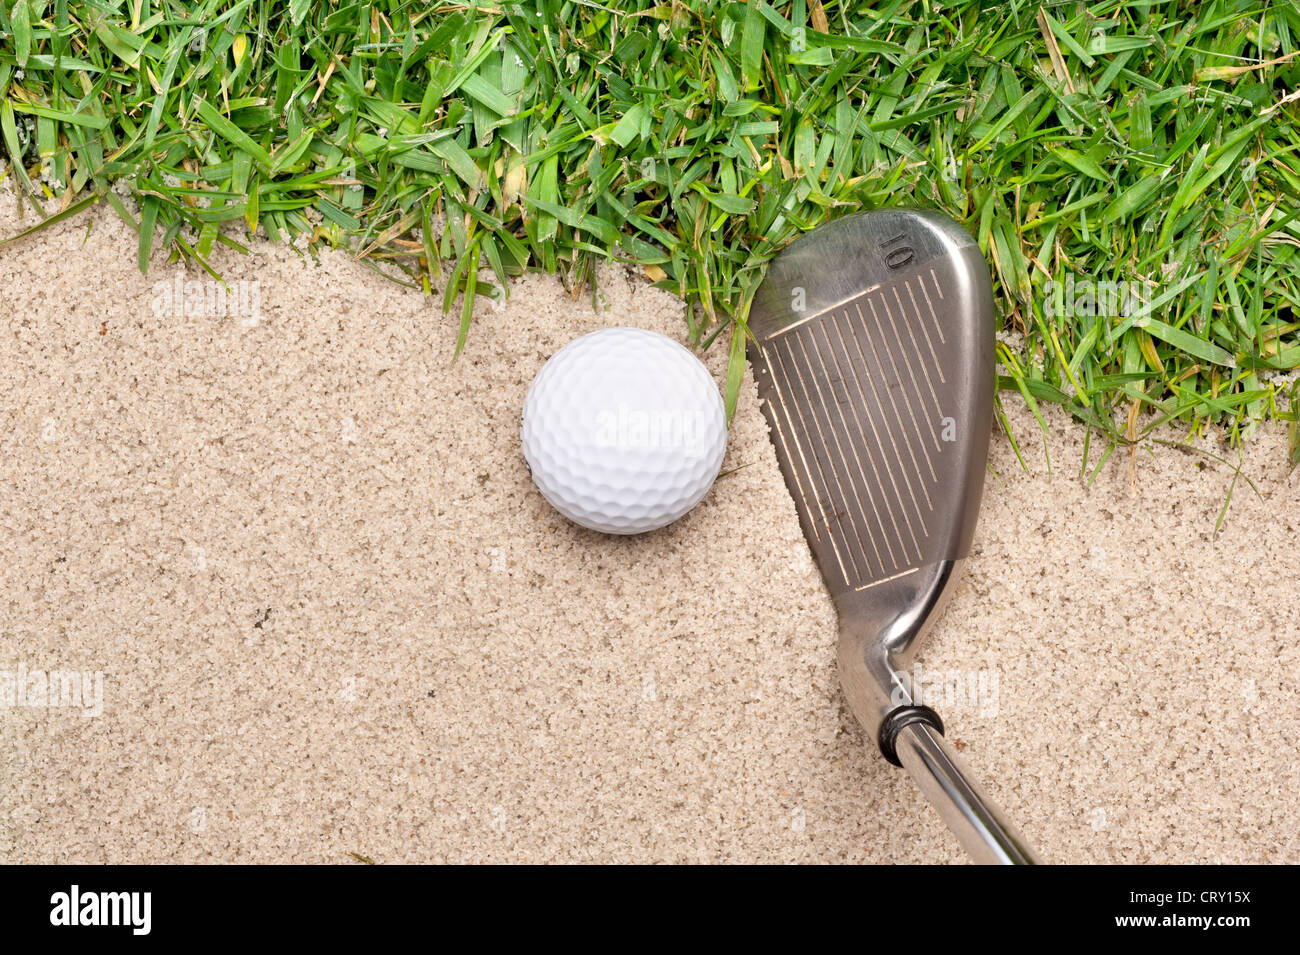 Une balle de golf dans une fosse de sable prêt à être frappé avec un fer à repasser. Banque D'Images